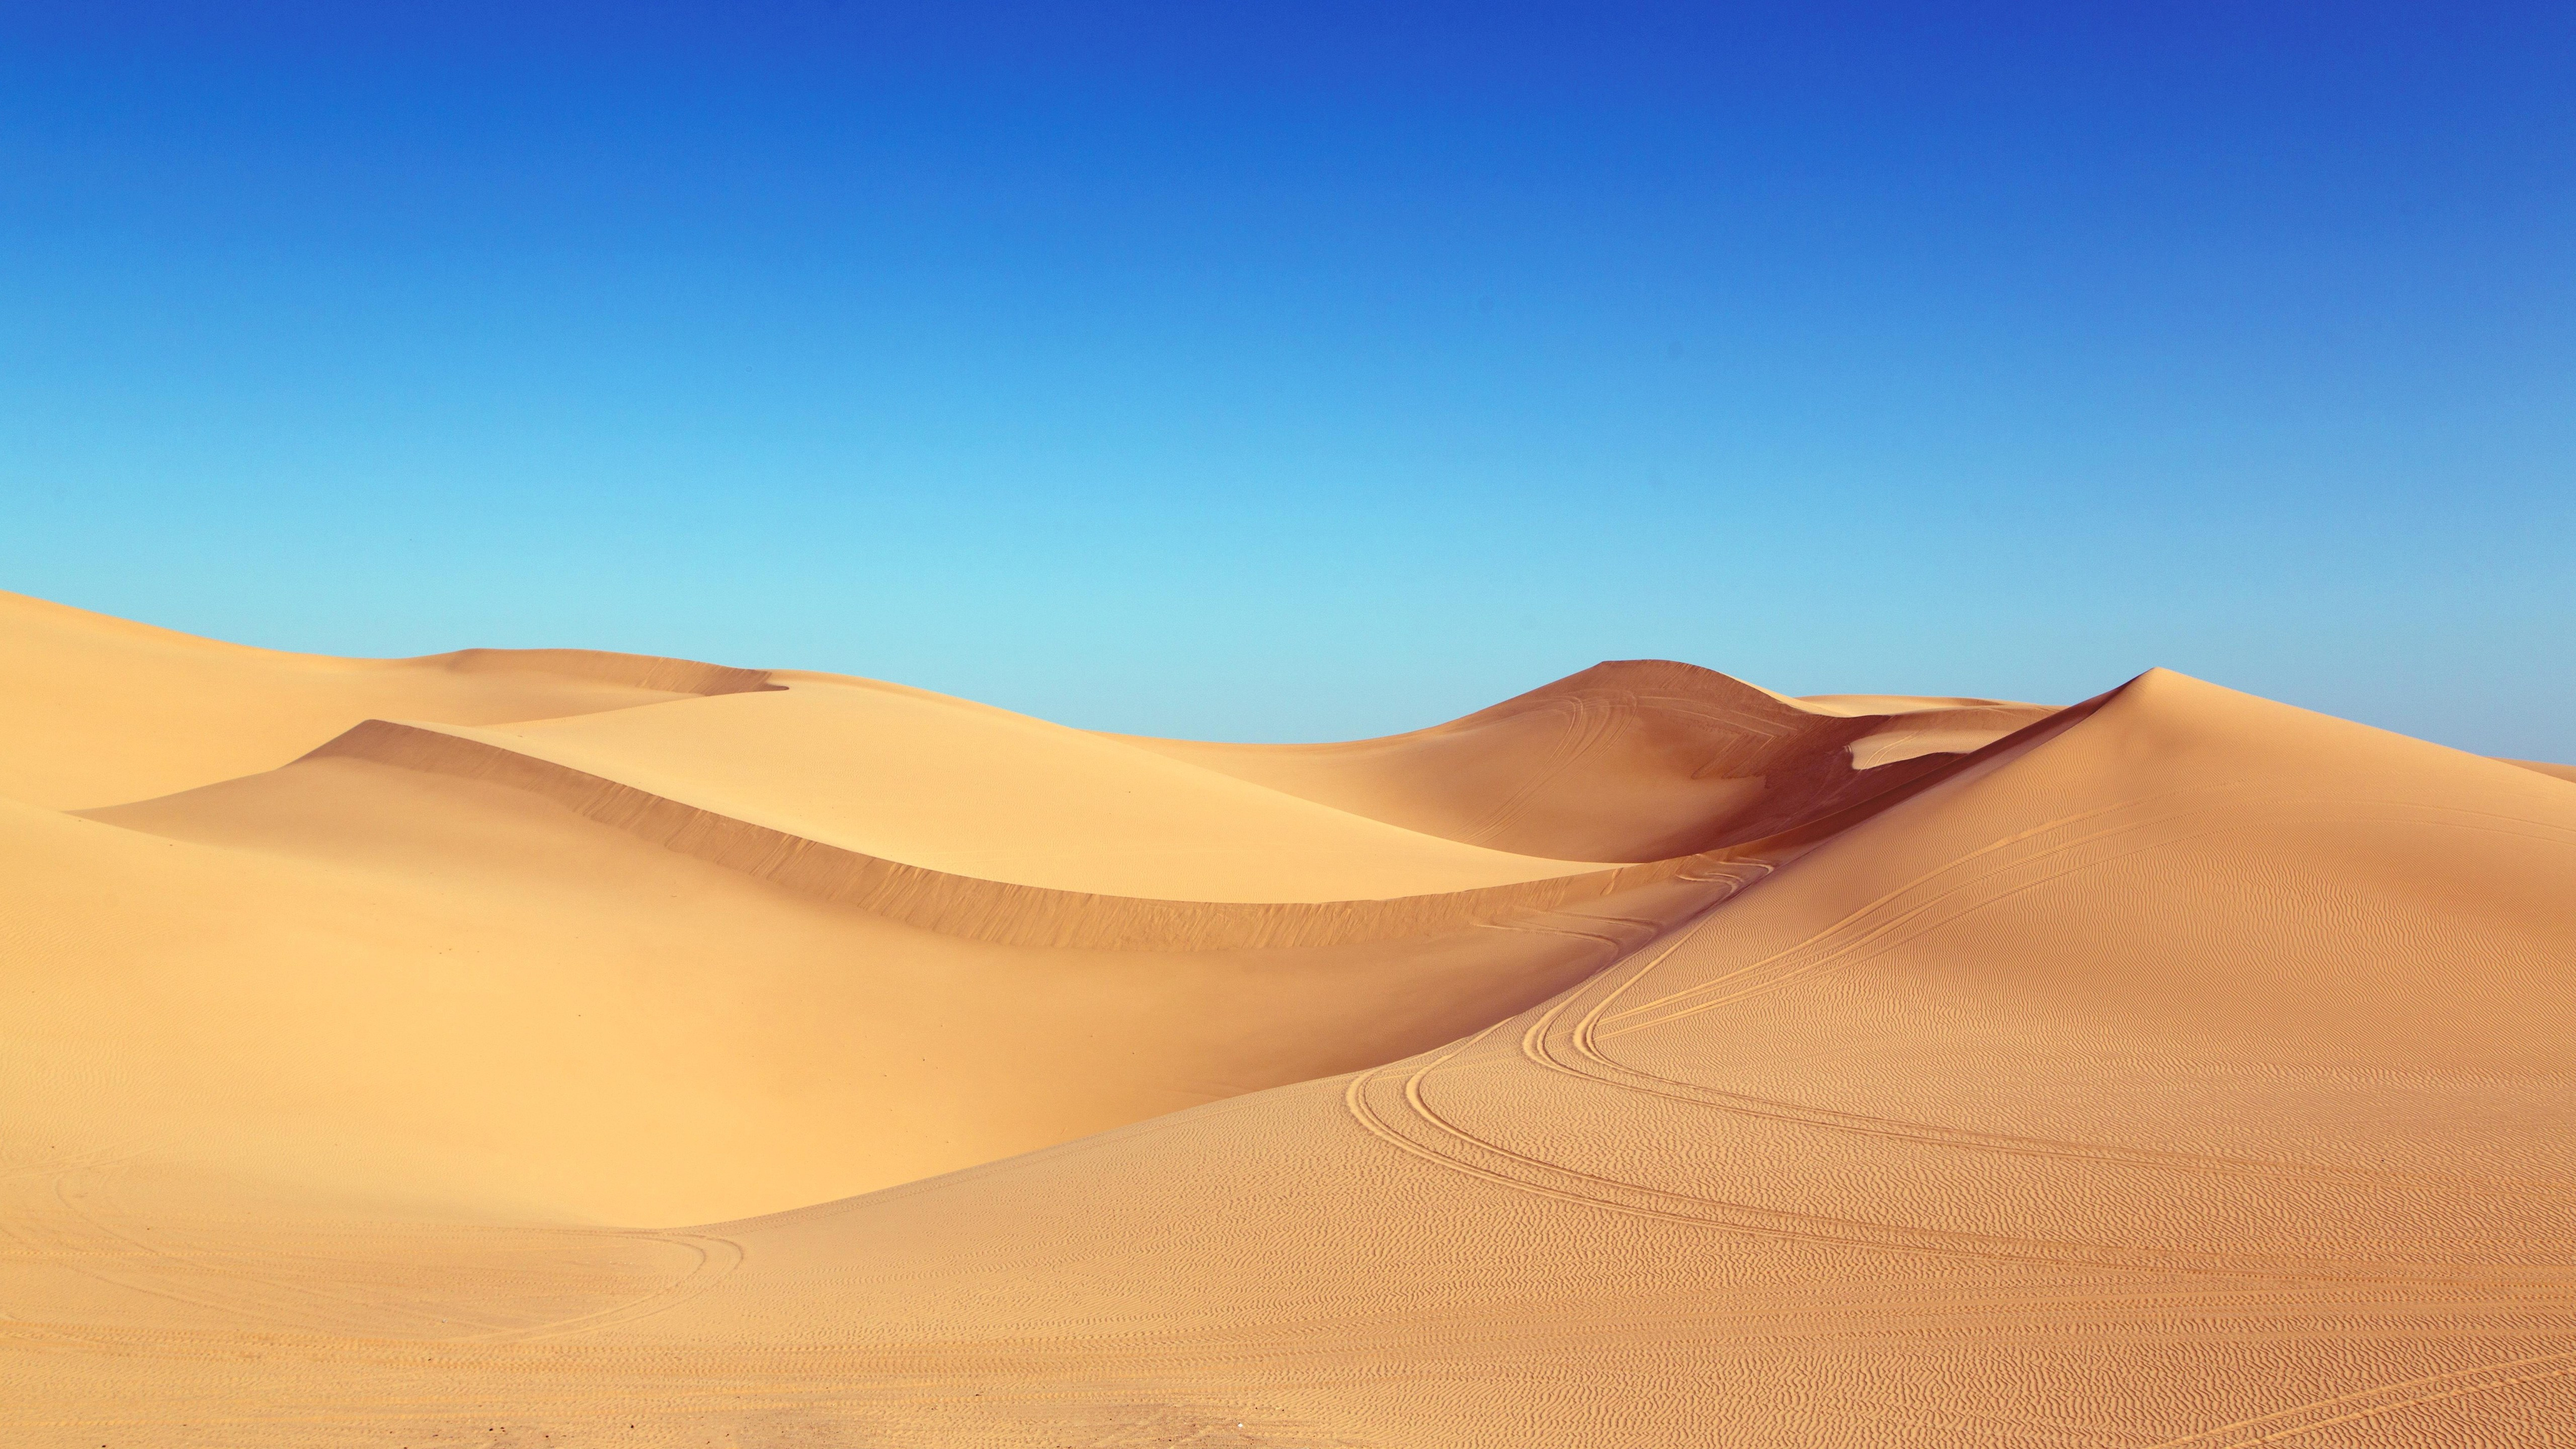 Wallpaper desert, 5k, 4k wallpaper, 8k, sand, algodones dunes, Nature